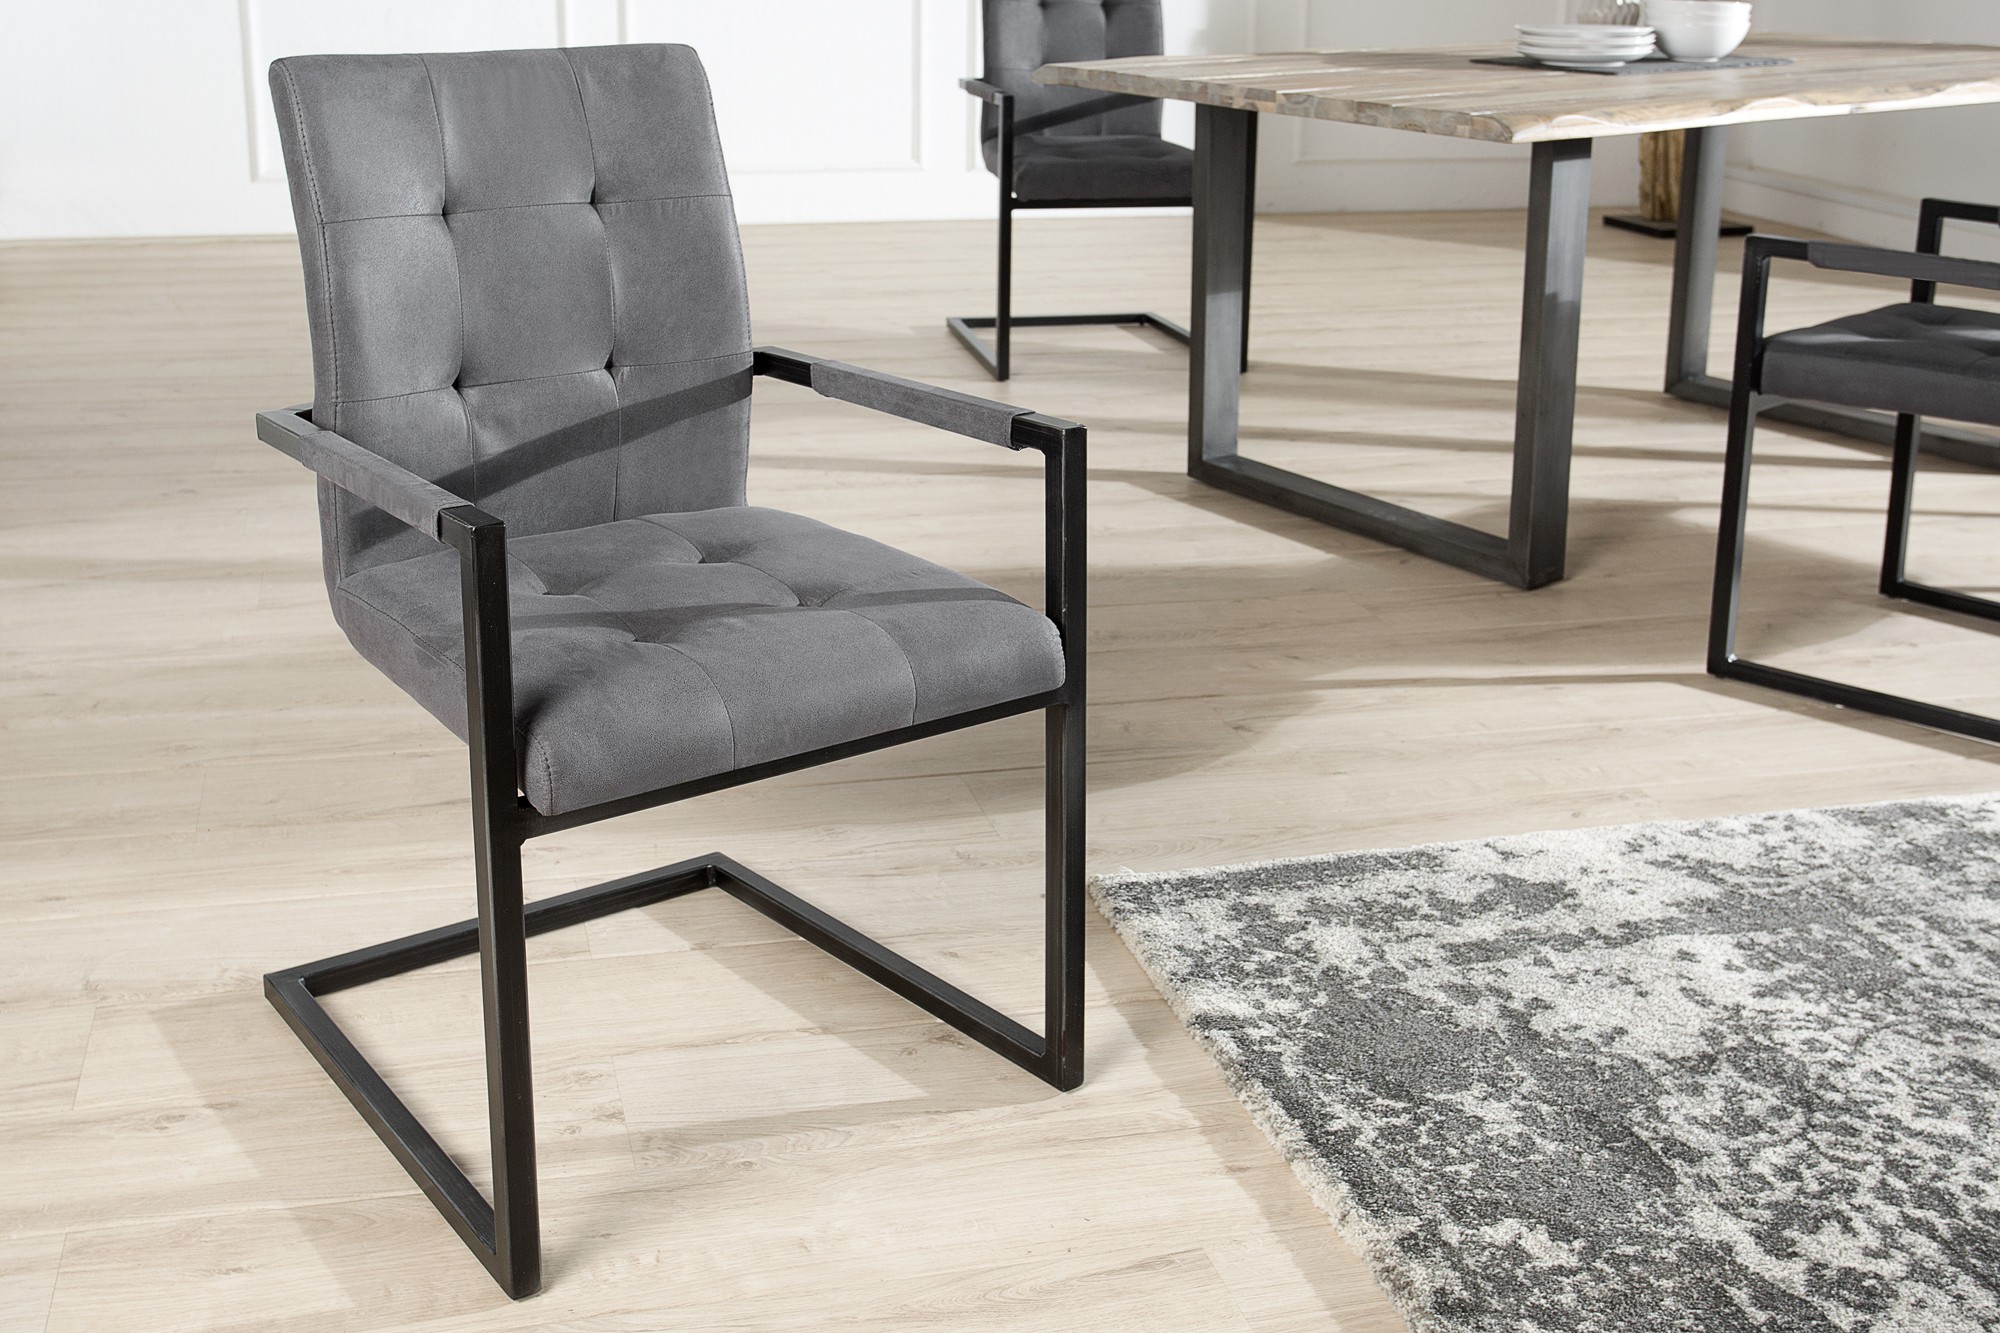 Estila Designová stylová židle Oxford s područkami šedá